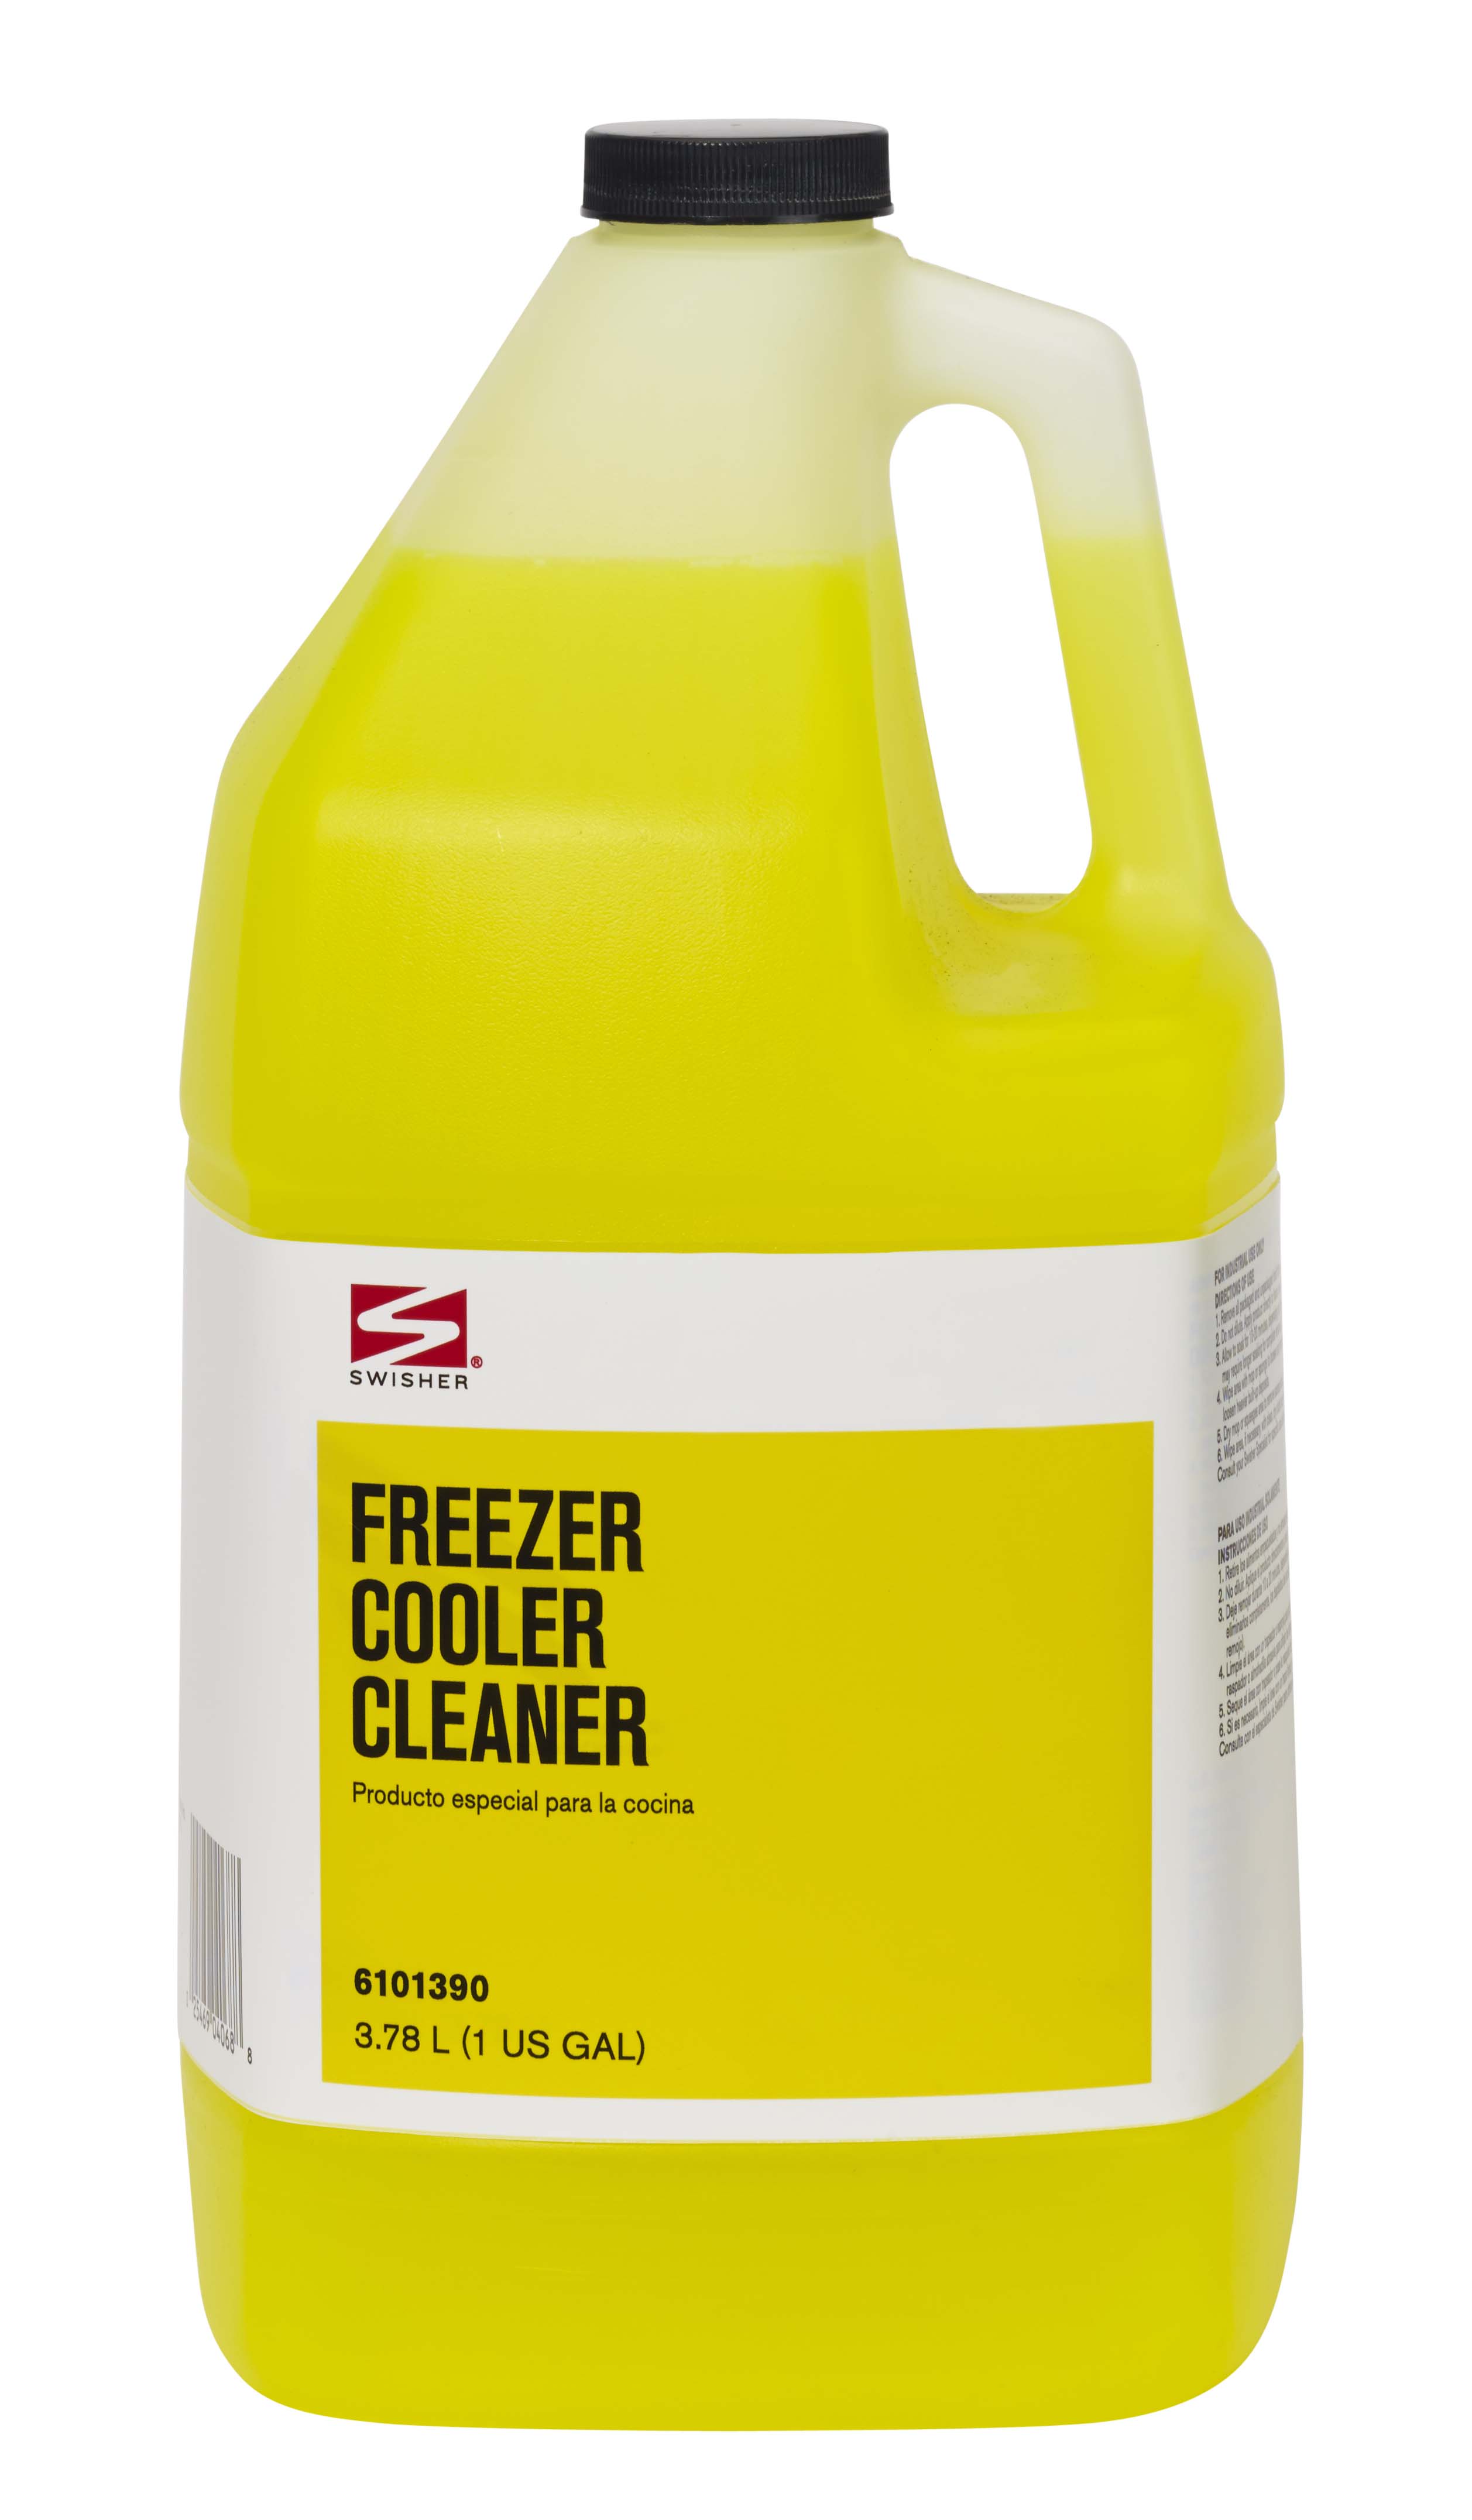 Swisher Freezer Cooler Cleaner